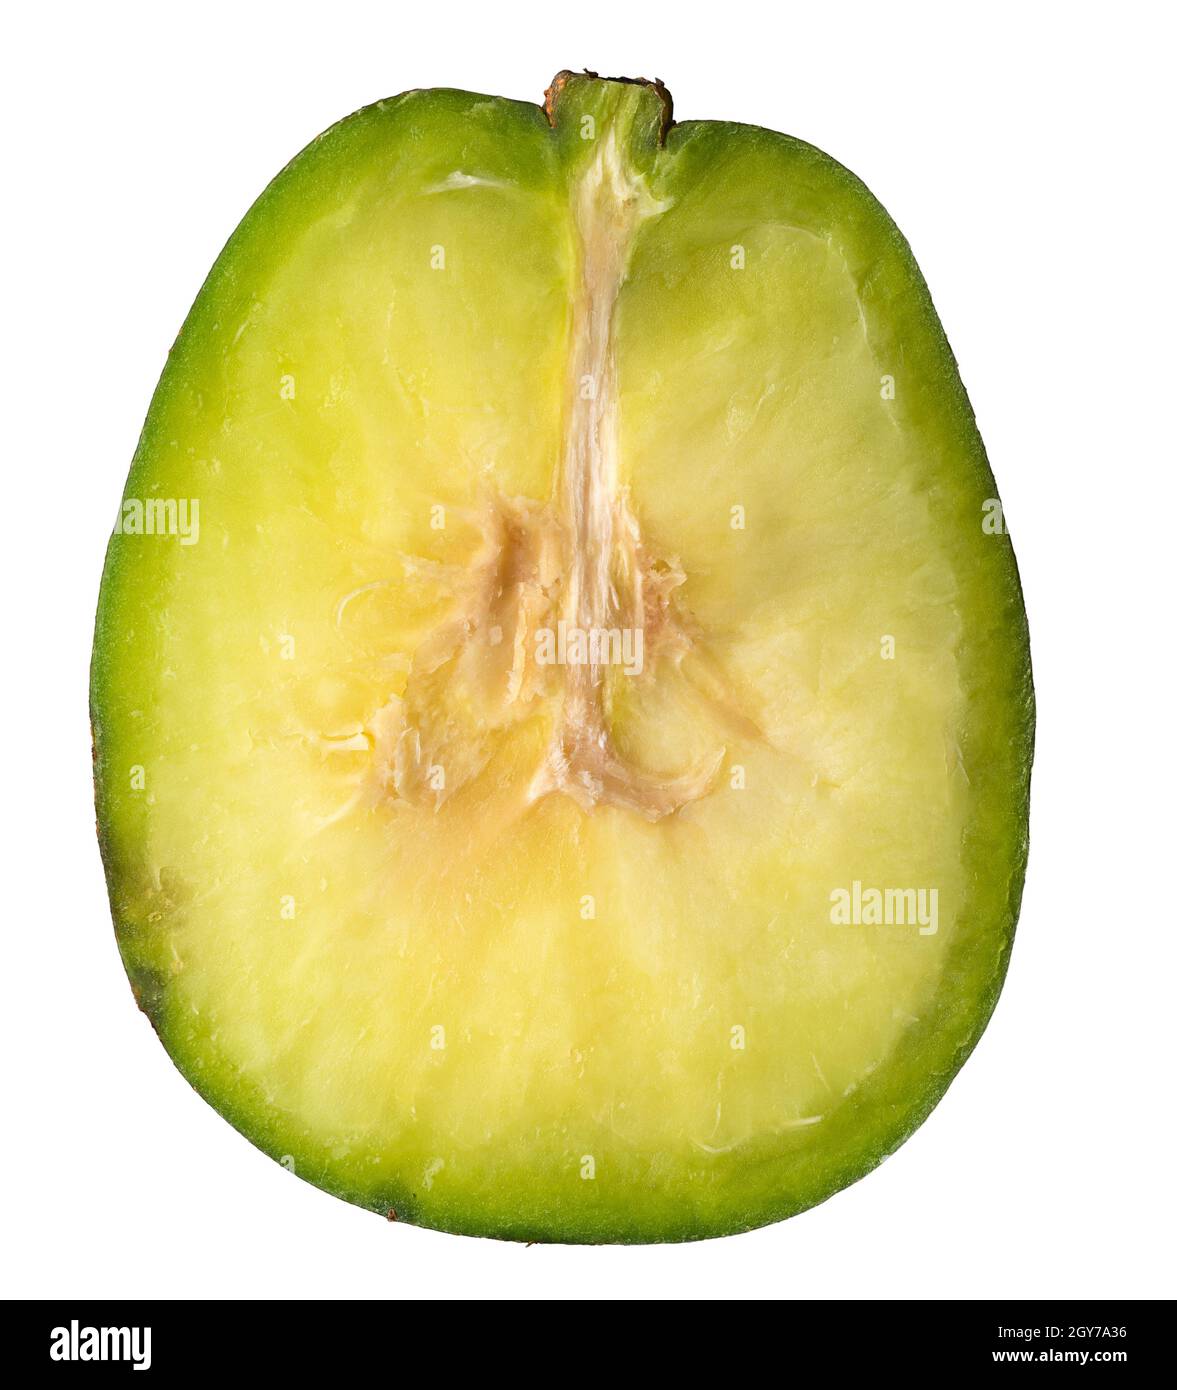 gros plan coupe transversale d'ambarella ou prune de juin, tranche d'un fruit comestible isolé sur fond blanc, macro Banque D'Images